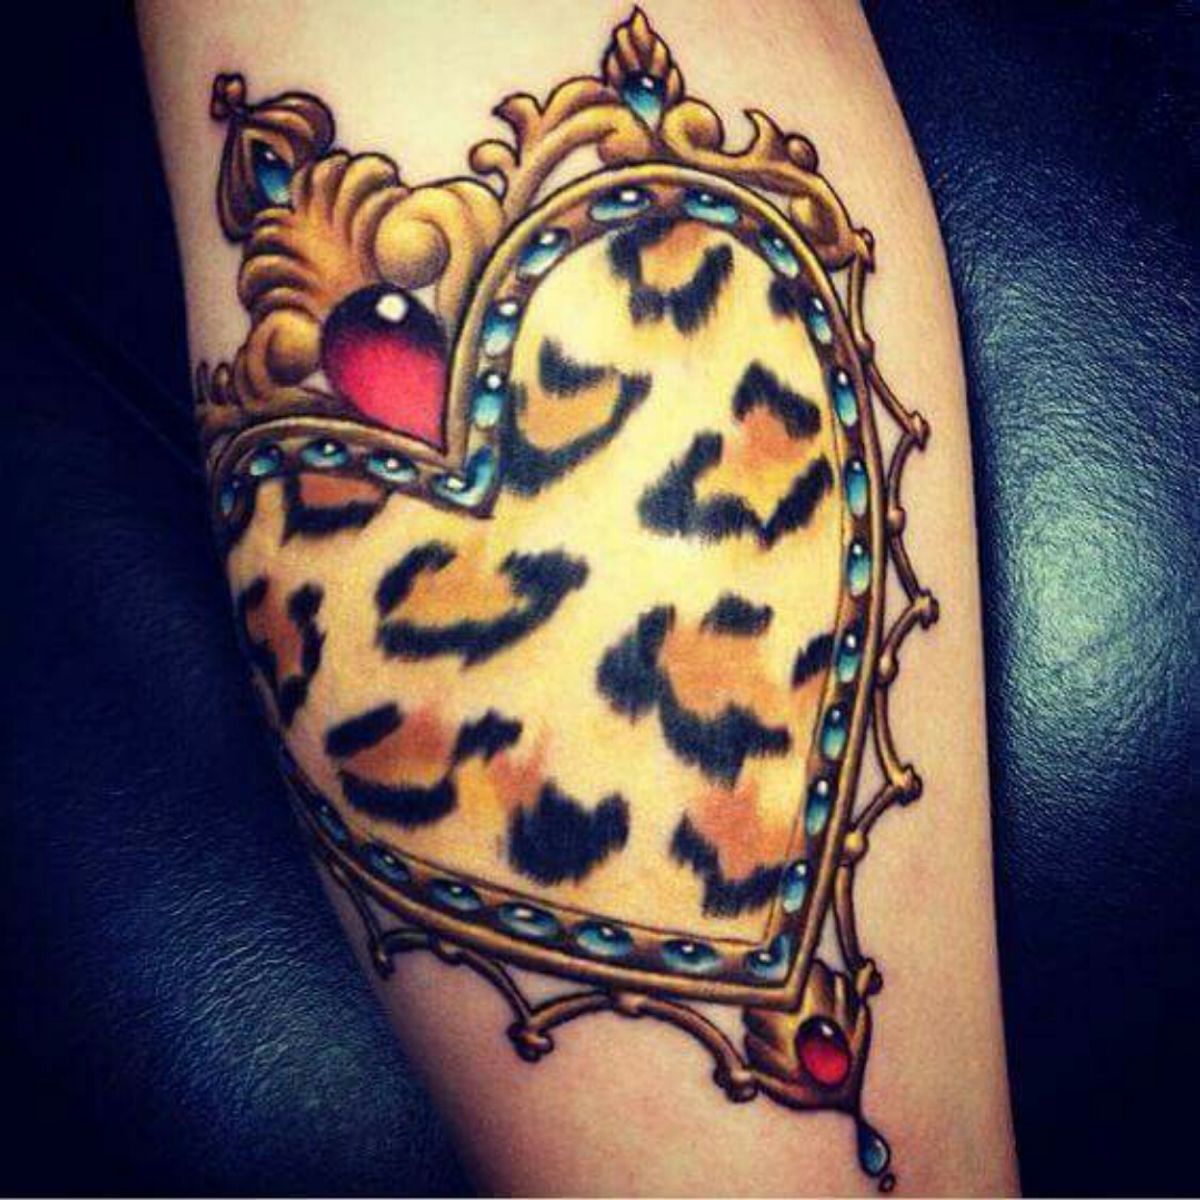 Татуировка узора леопарда на руке